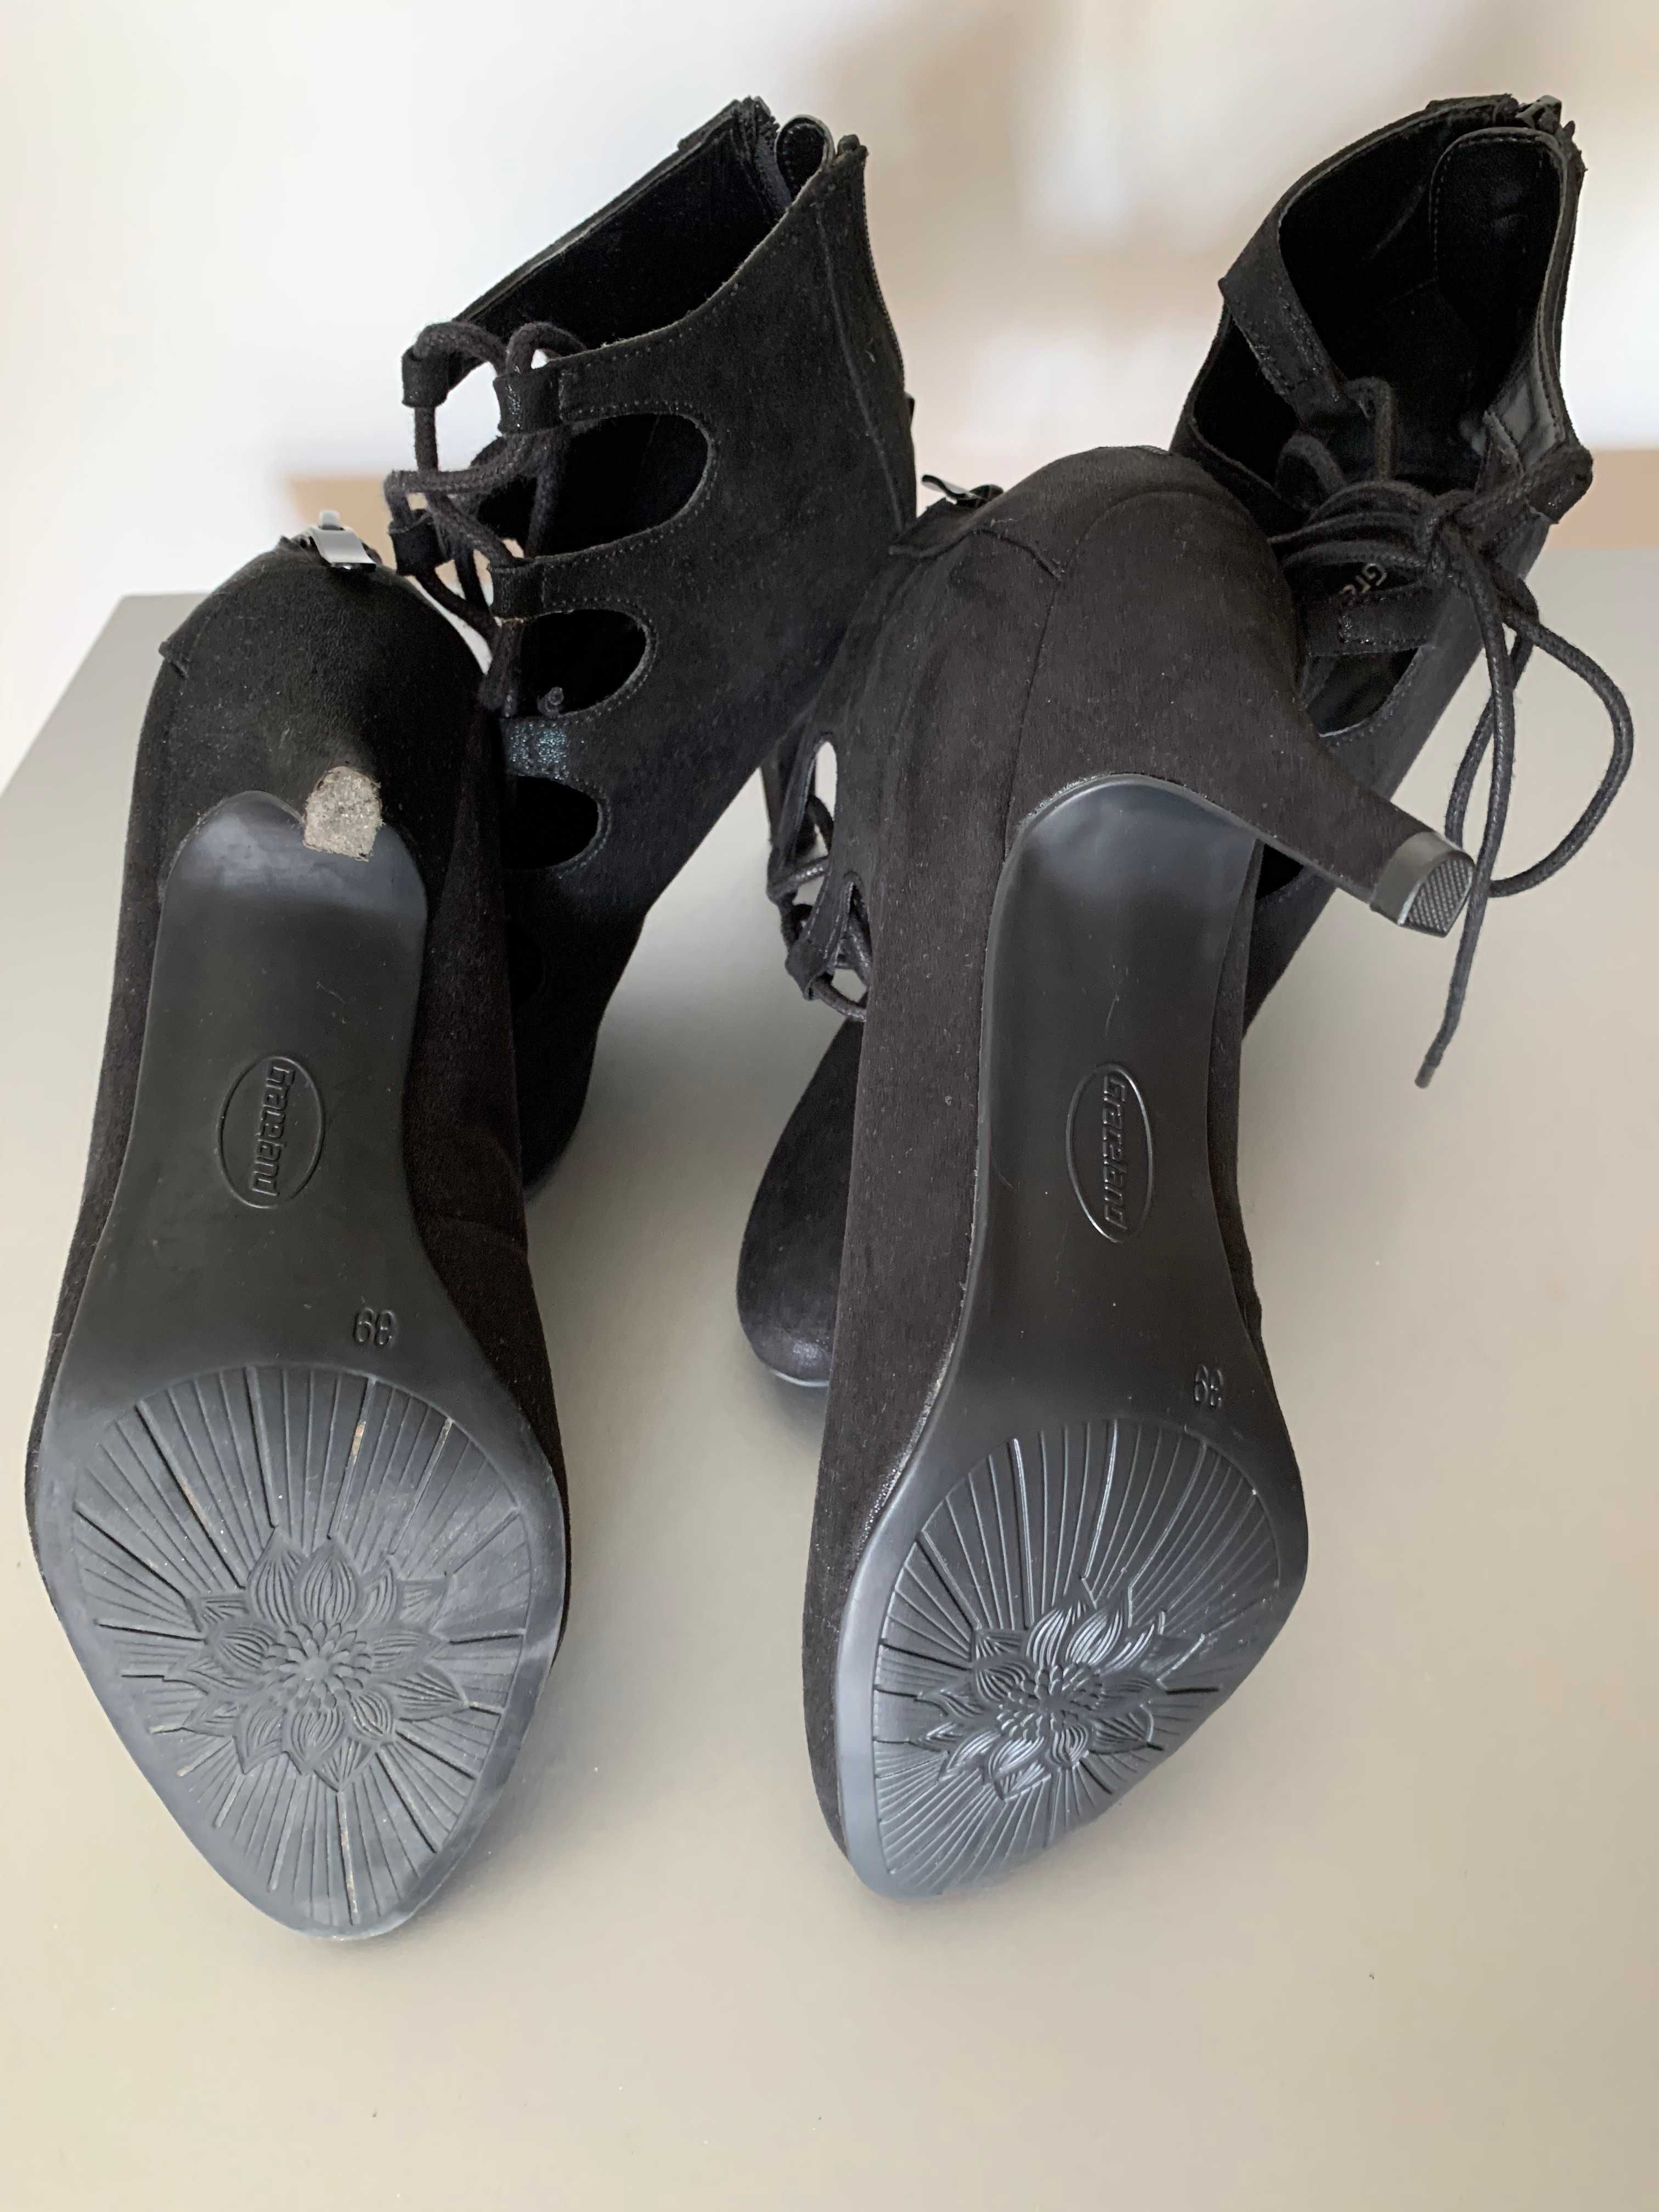 czółenka damskie buty letnie szpilki wiązane czarne 39/40 Graceland x2